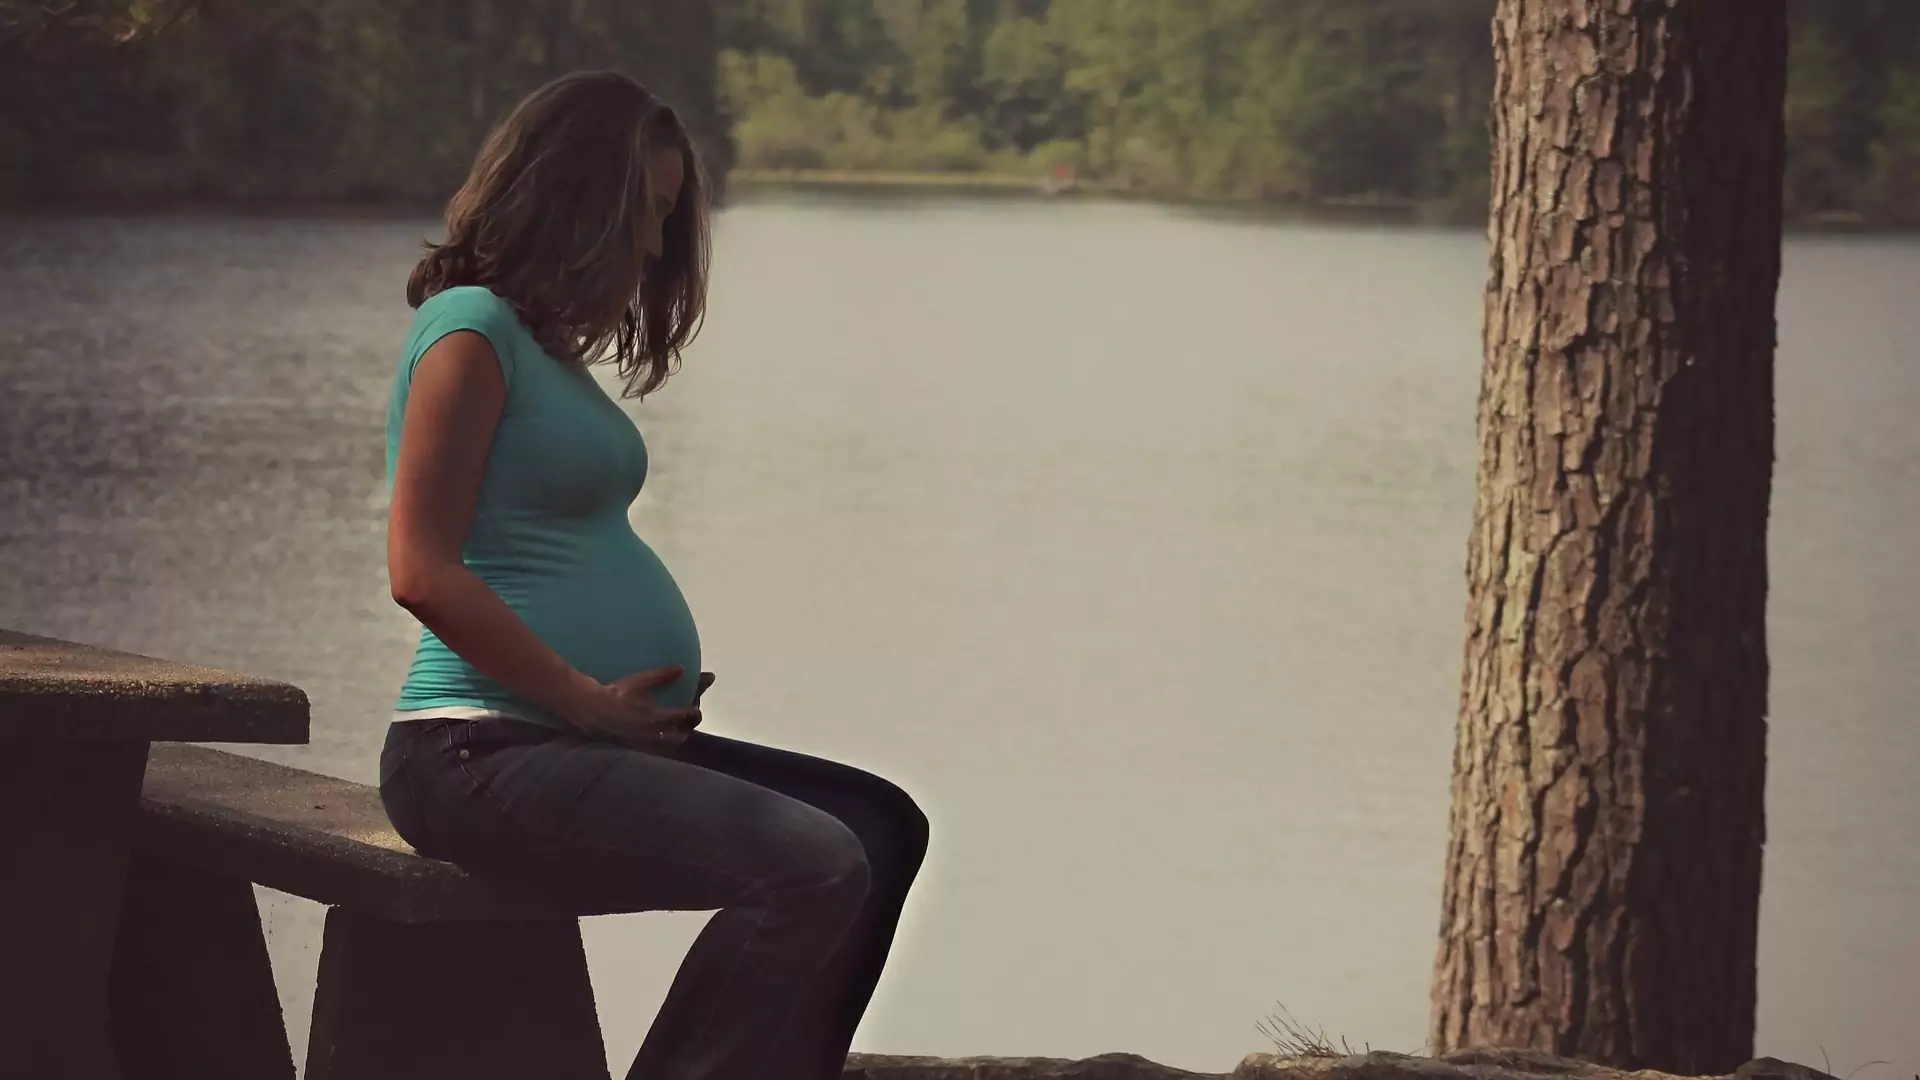 Nowy Jork zalegalizował aborcję. Pozwala na usunięcie ciąży nawet w 9. miesiącu